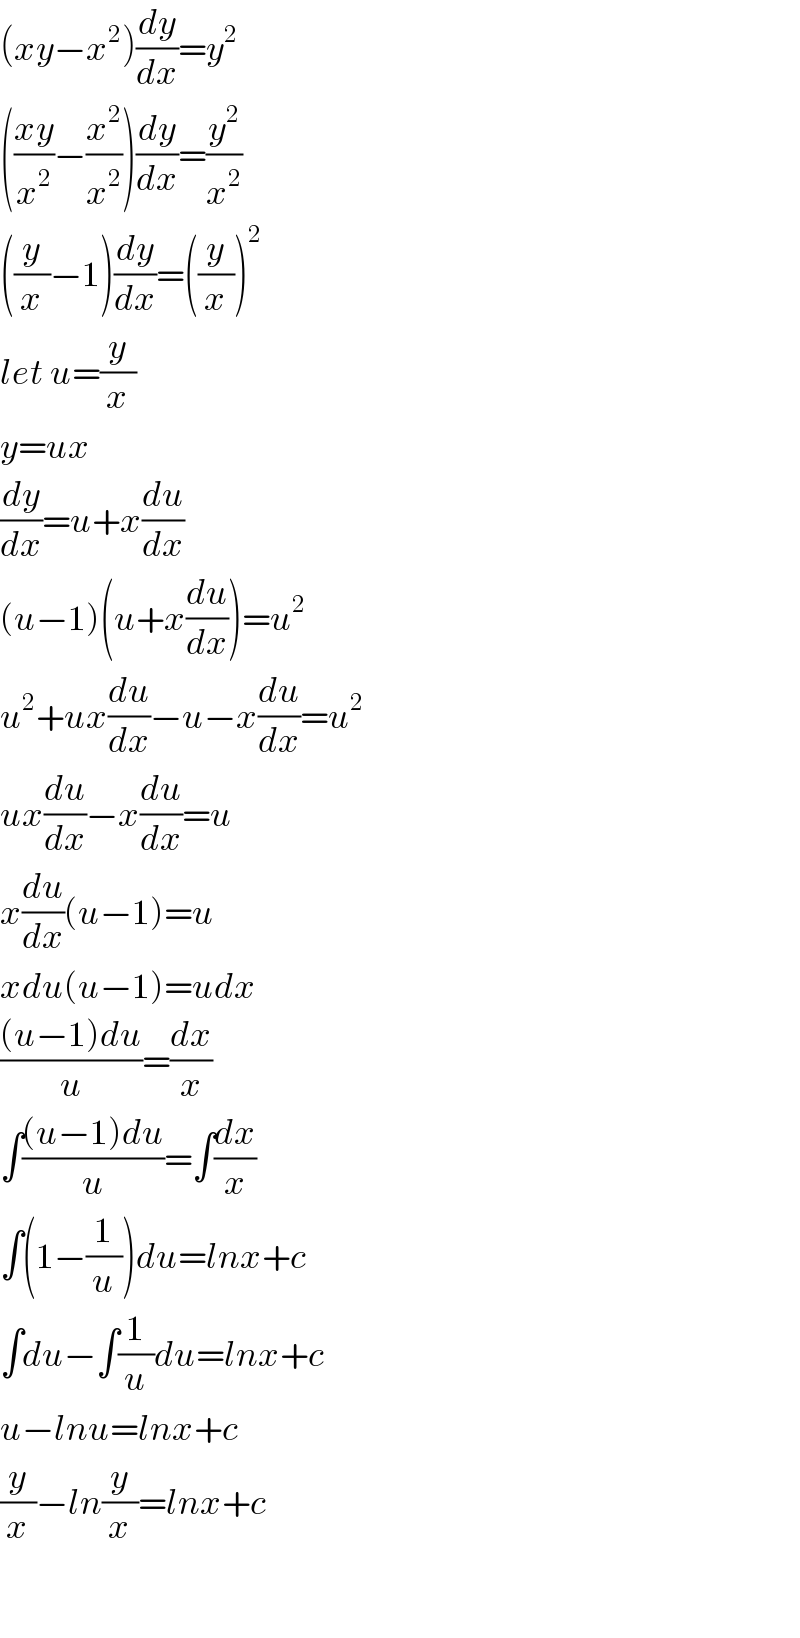 (xy−x^2 )(dy/dx)=y^2   (((xy)/x^2 )−(x^2 /x^2 ))(dy/dx)=(y^2 /x^2 )  ((y/x)−1)(dy/dx)=((y/x))^2   let u=(y/x)  y=ux  (dy/dx)=u+x(du/dx)  (u−1)(u+x(du/dx))=u^2   u^2 +ux(du/dx)−u−x(du/dx)=u^2   ux(du/dx)−x(du/dx)=u  x(du/dx)(u−1)=u  xdu(u−1)=udx  (((u−1)du)/u)=(dx/x)  ∫(((u−1)du)/u)=∫(dx/x)  ∫(1−(1/u))du=lnx+c  ∫du−∫(1/u)du=lnx+c  u−lnu=lnx+c  (y/x)−ln(y/x)=lnx+c    